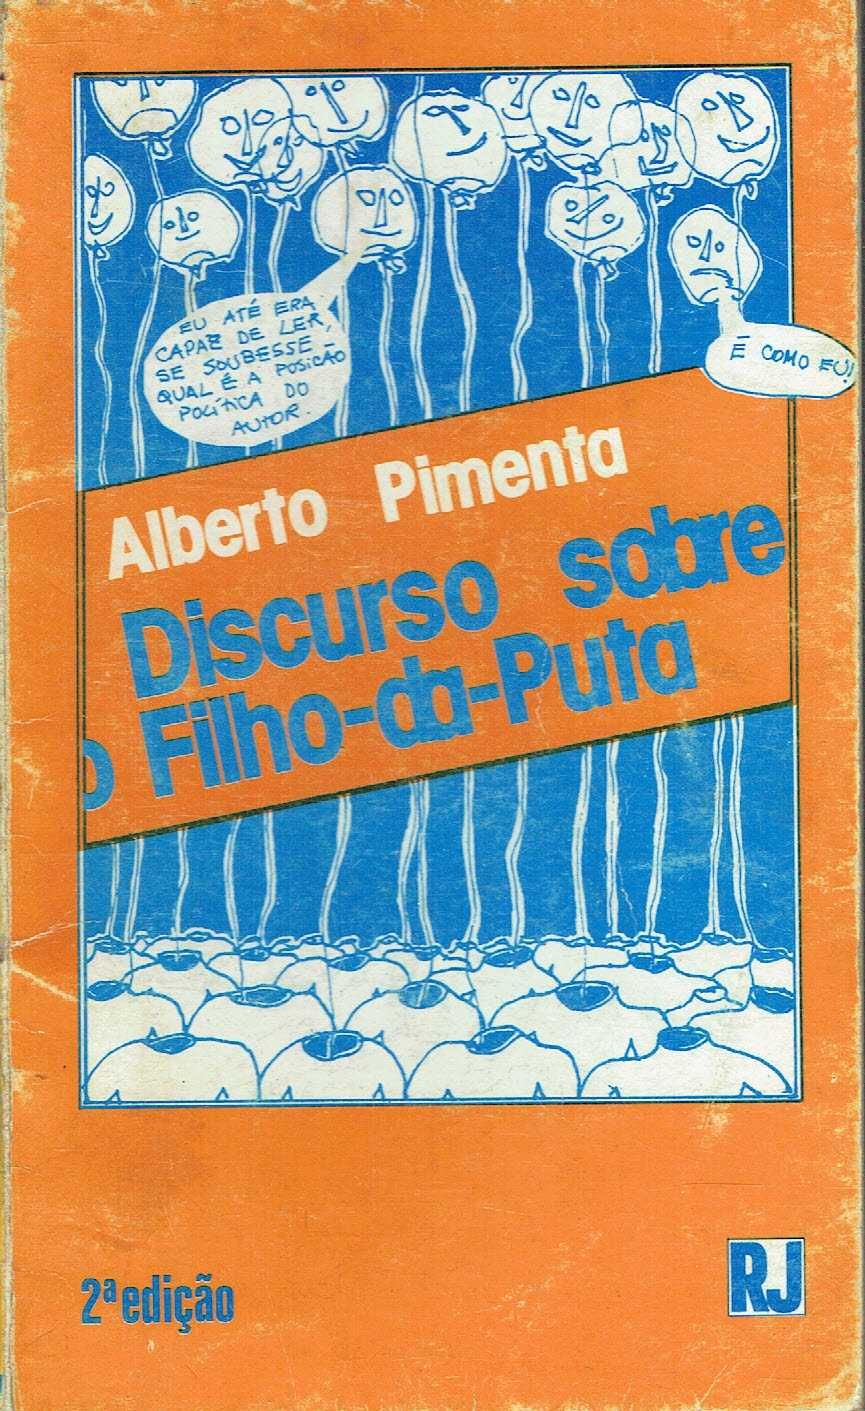 11707

Discurso sobre o Filho-da-puta.
de Alberto Pimenta